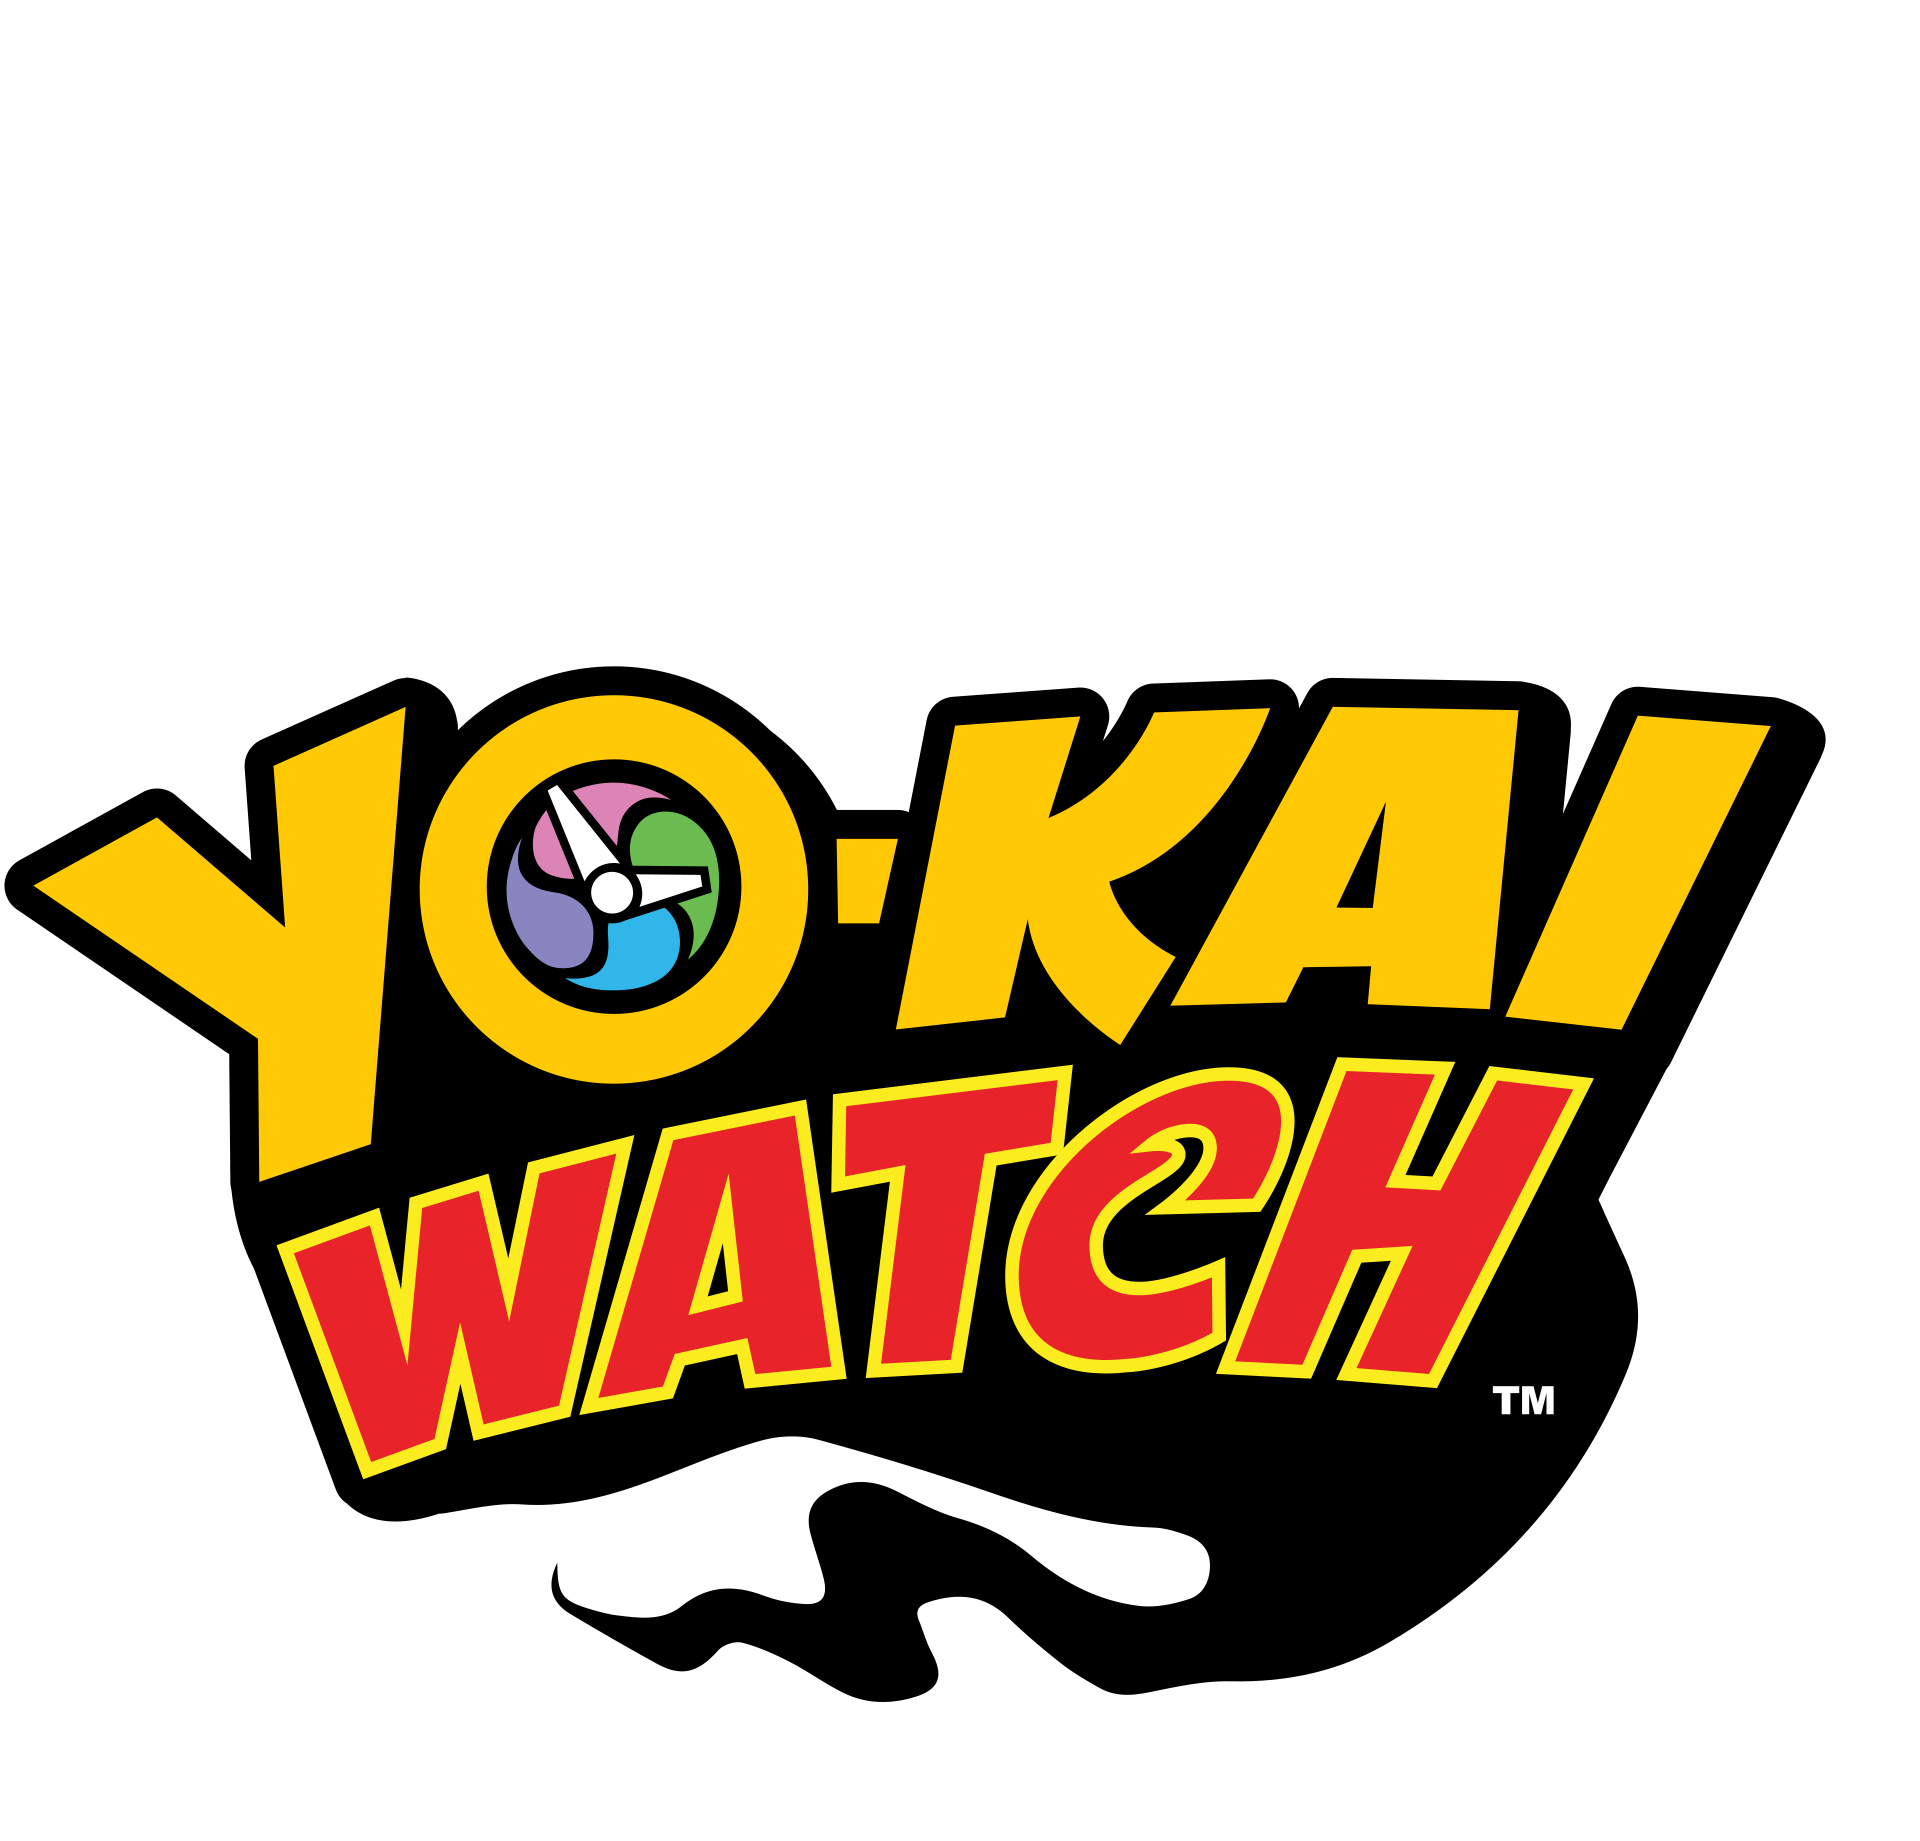 Yo-Kai Watch - Meus Jogos